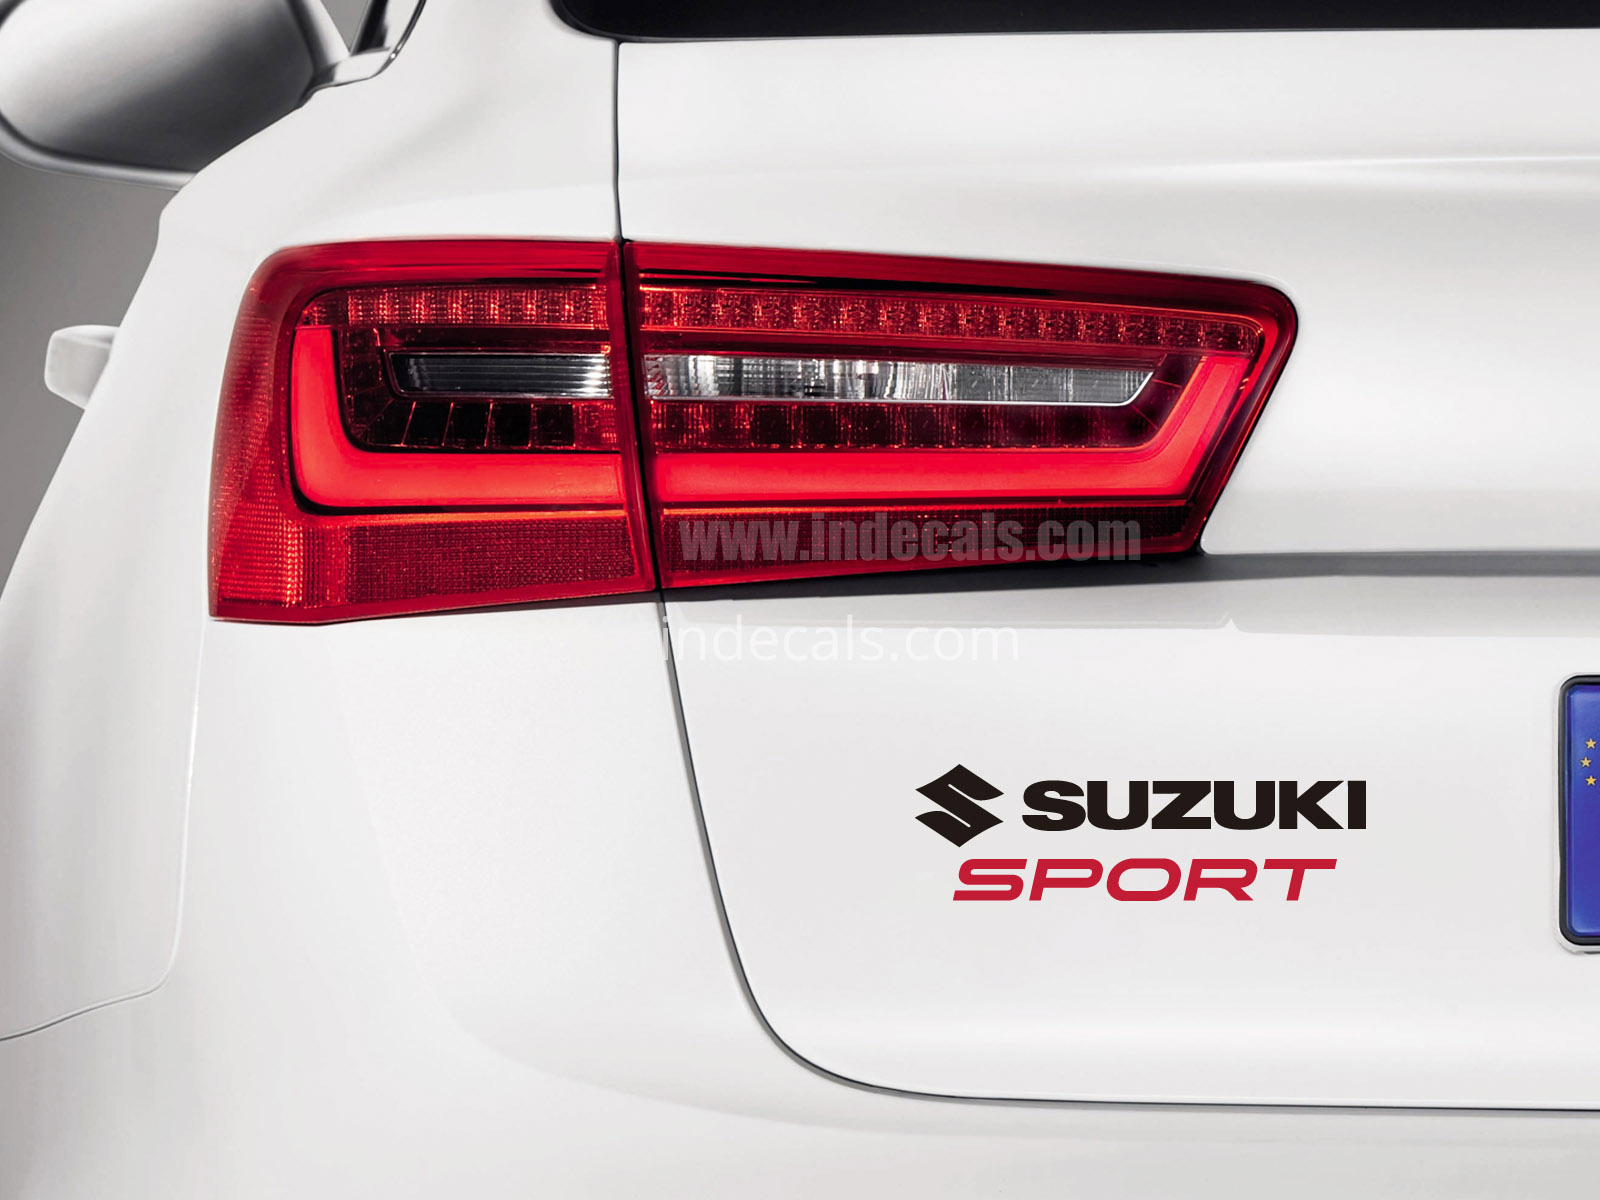 1 x Suzuki Sports Sticker for Trunk - Black & Red